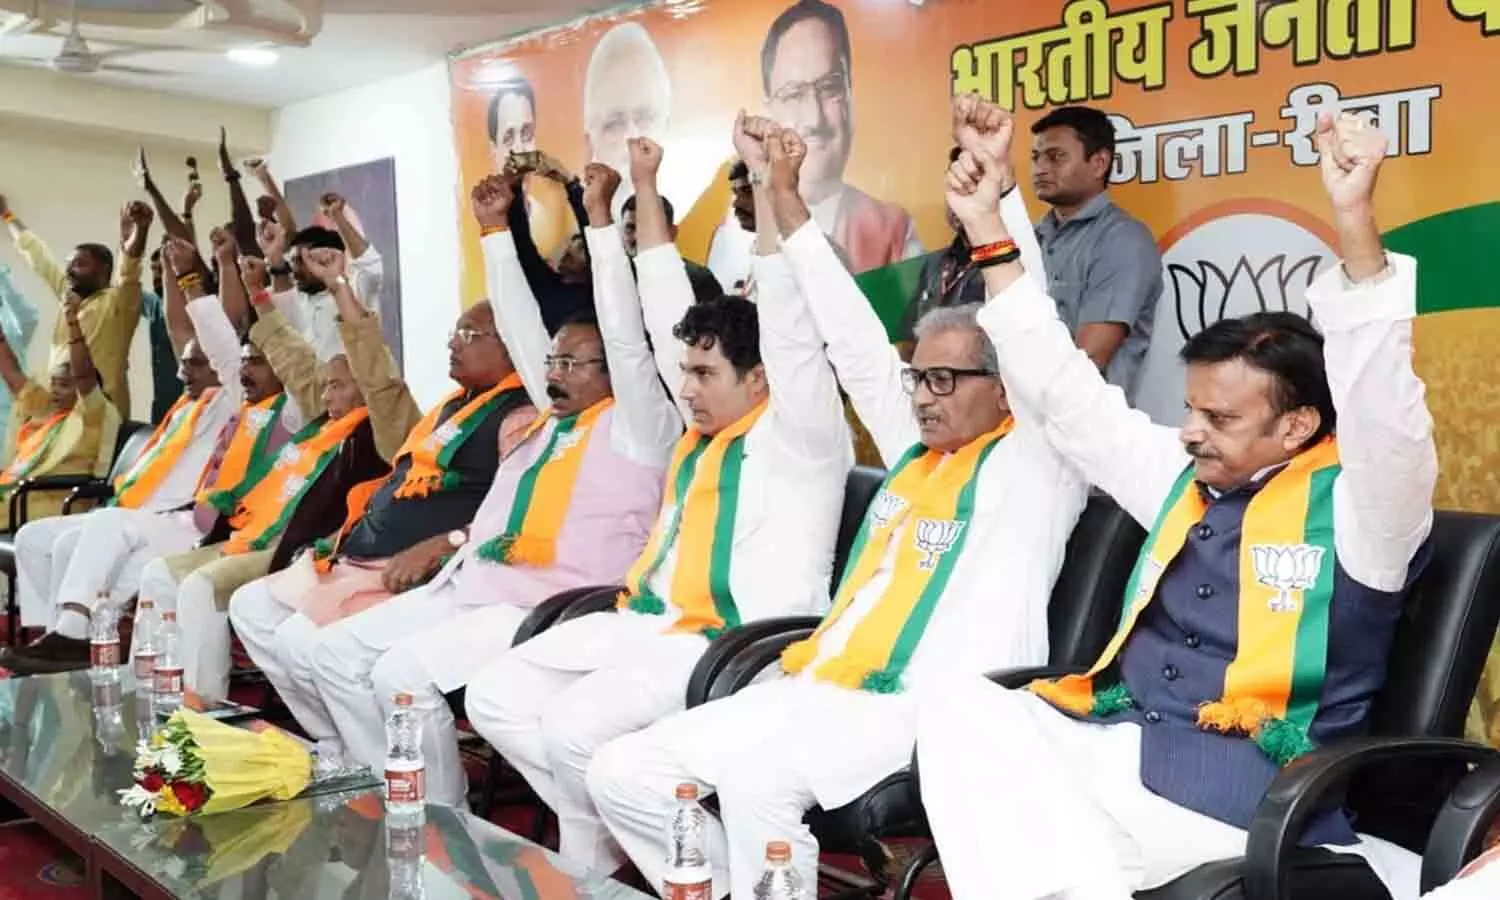 भाजपा में राज का ग्रैंड वेलकम: सिद्धार्थ तिवारी का रीवा में सैकड़ों समर्थकों ने किया जोरदार स्वागत, कांग्रेस छोड़कर पहली बार BJP कार्यालय पहुंचे